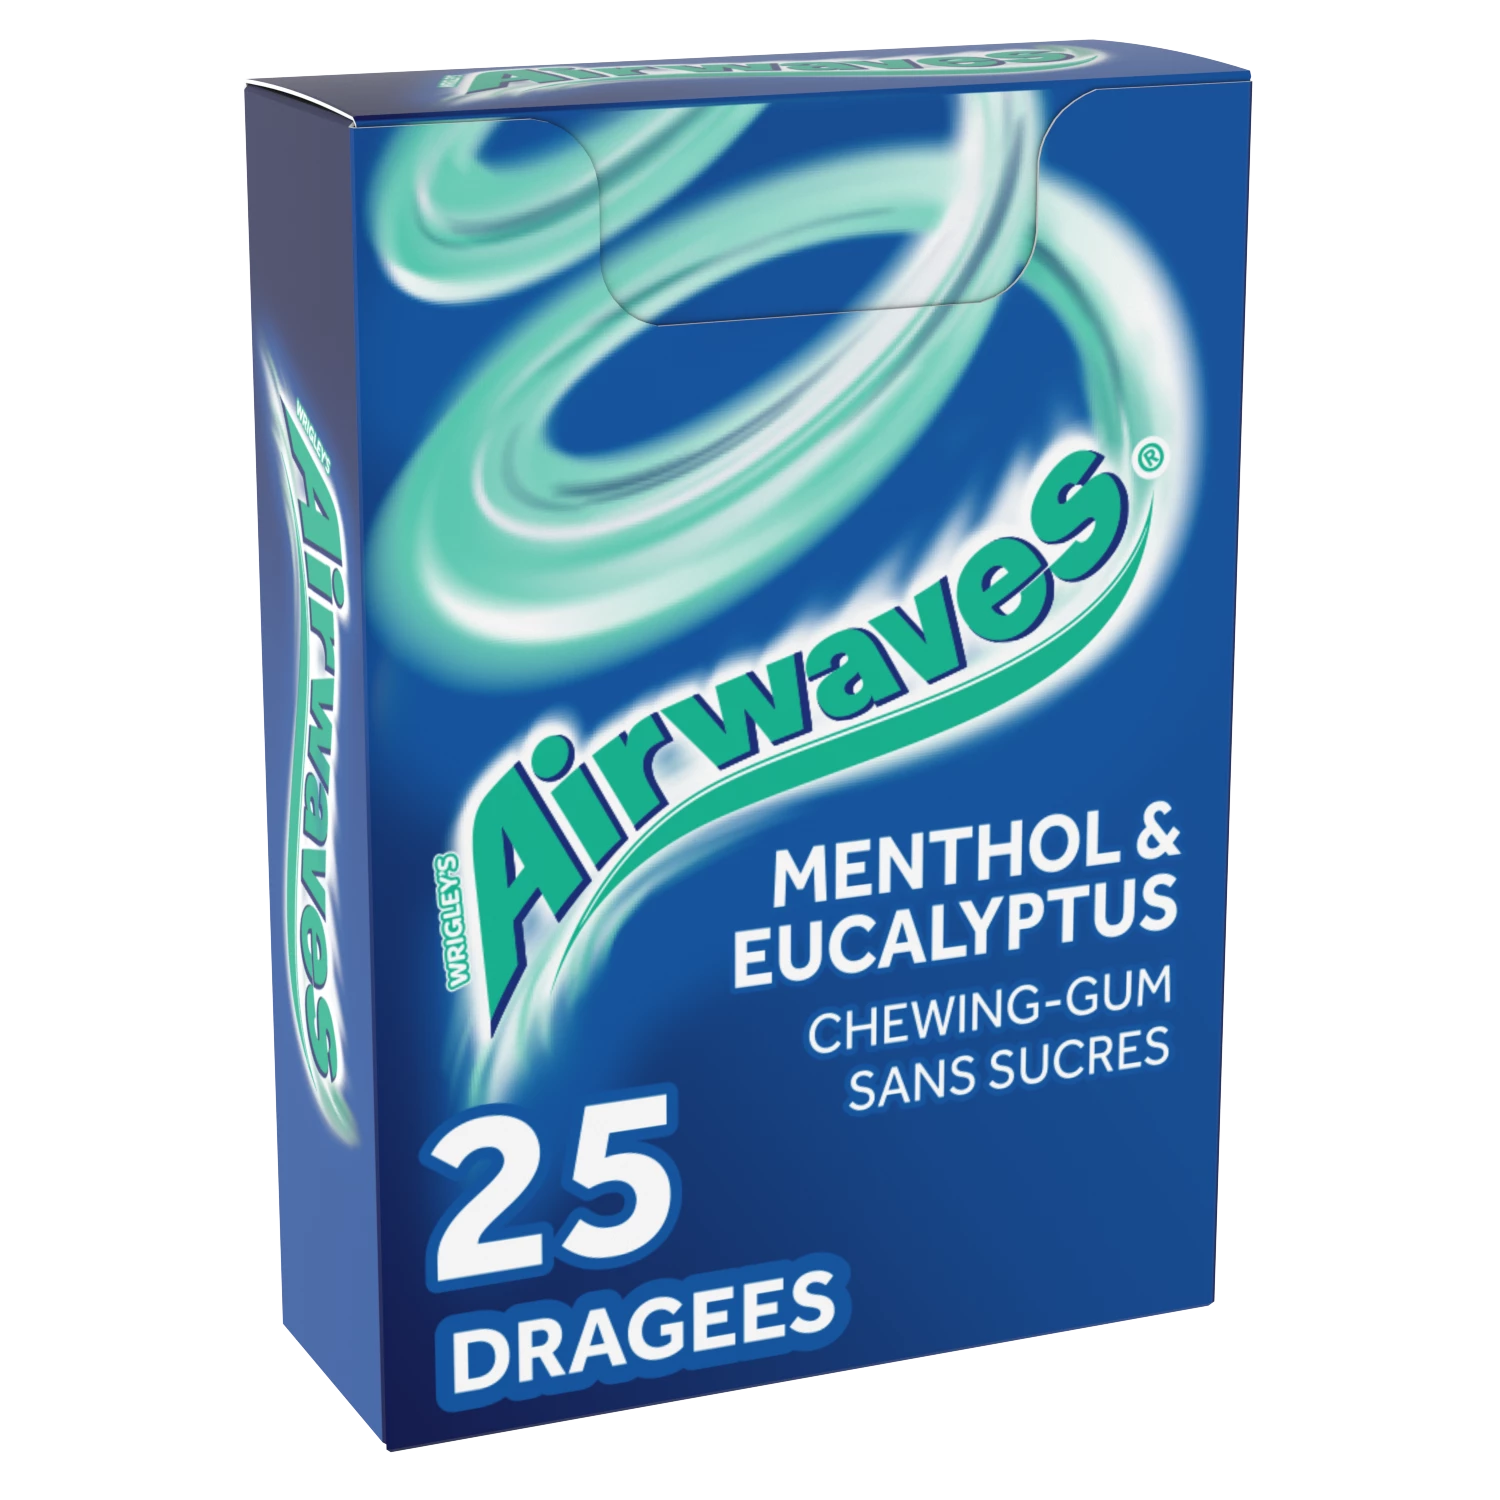 Chewing-gum sans sucres Menthol Eucalyptus - AIRWAVES